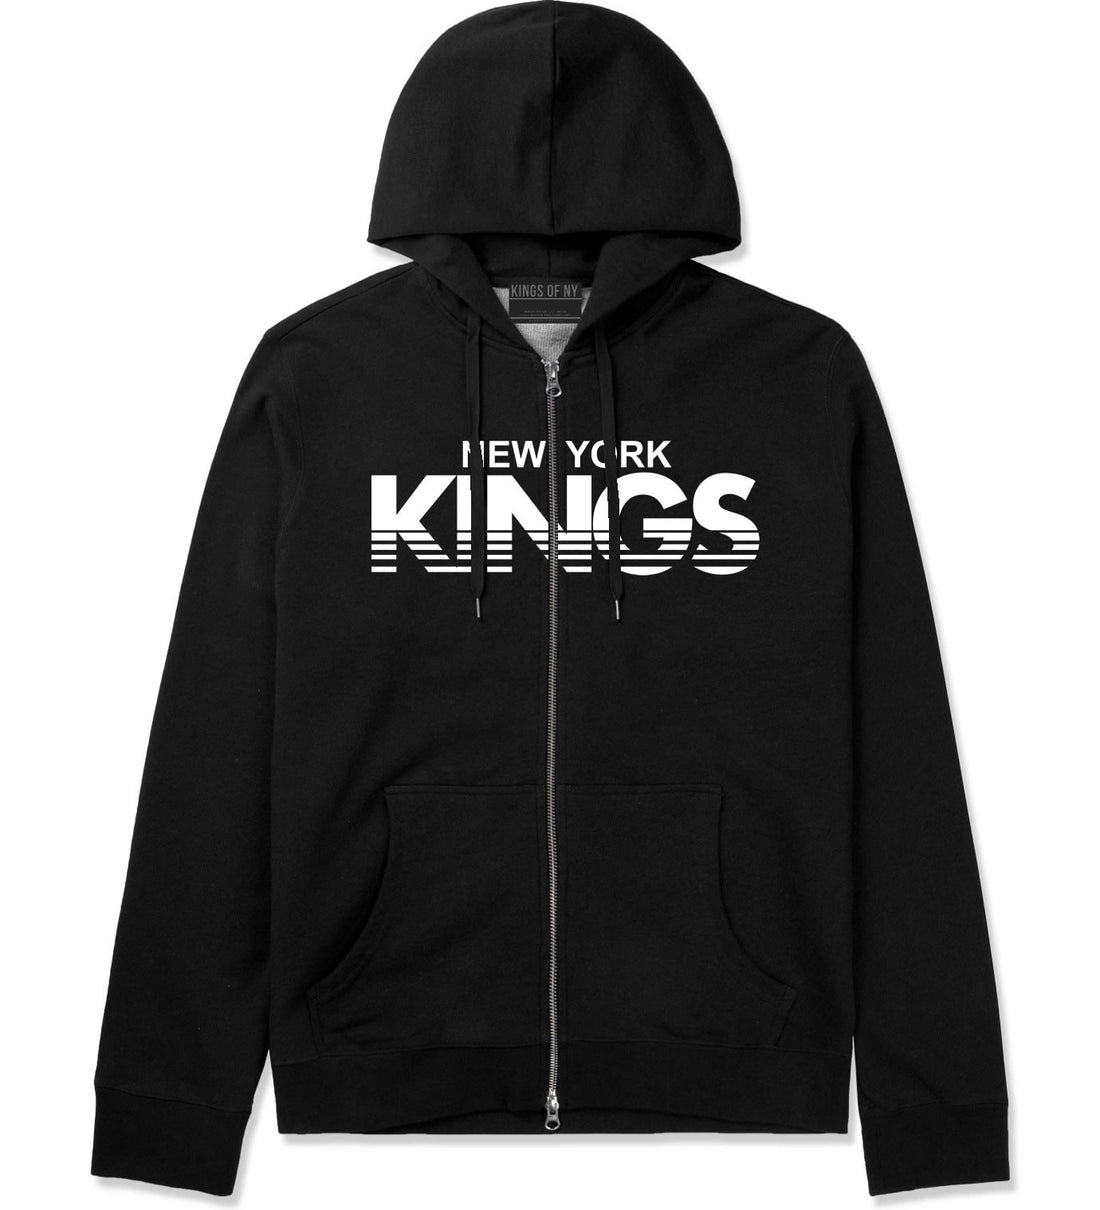 New York Kings Racing Style Zip Up Hoodie Hoody in Black by Kings Of NY